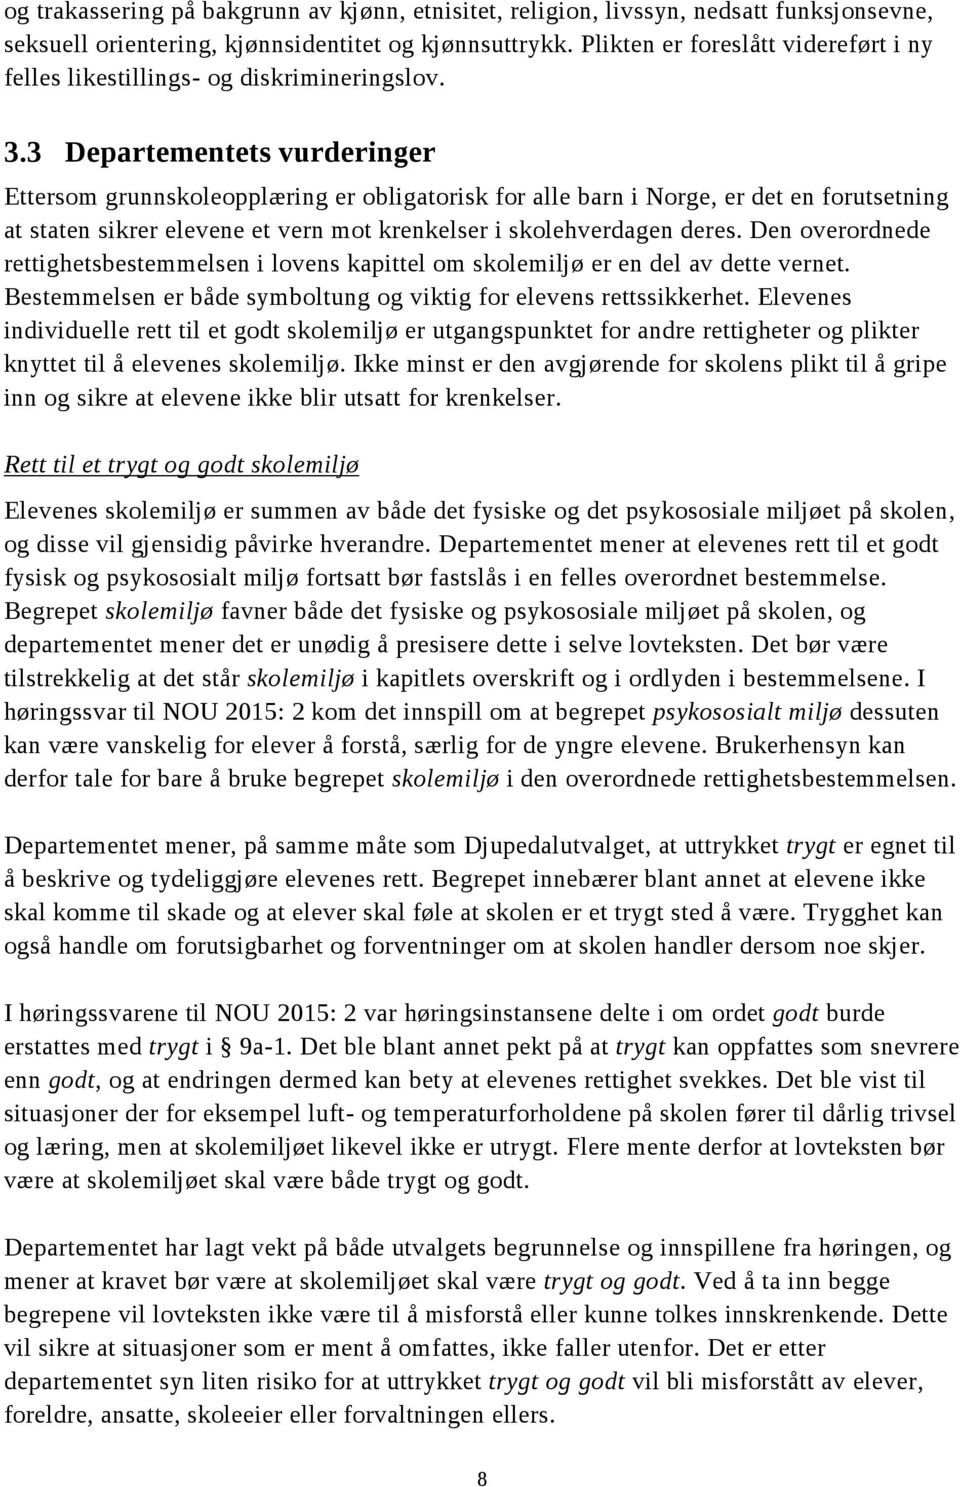 3 Departementets vurderinger Ettersom grunnskoleopplæring er obligatorisk for alle barn i Norge, er det en forutsetning at staten sikrer elevene et vern mot krenkelser i skolehverdagen deres.